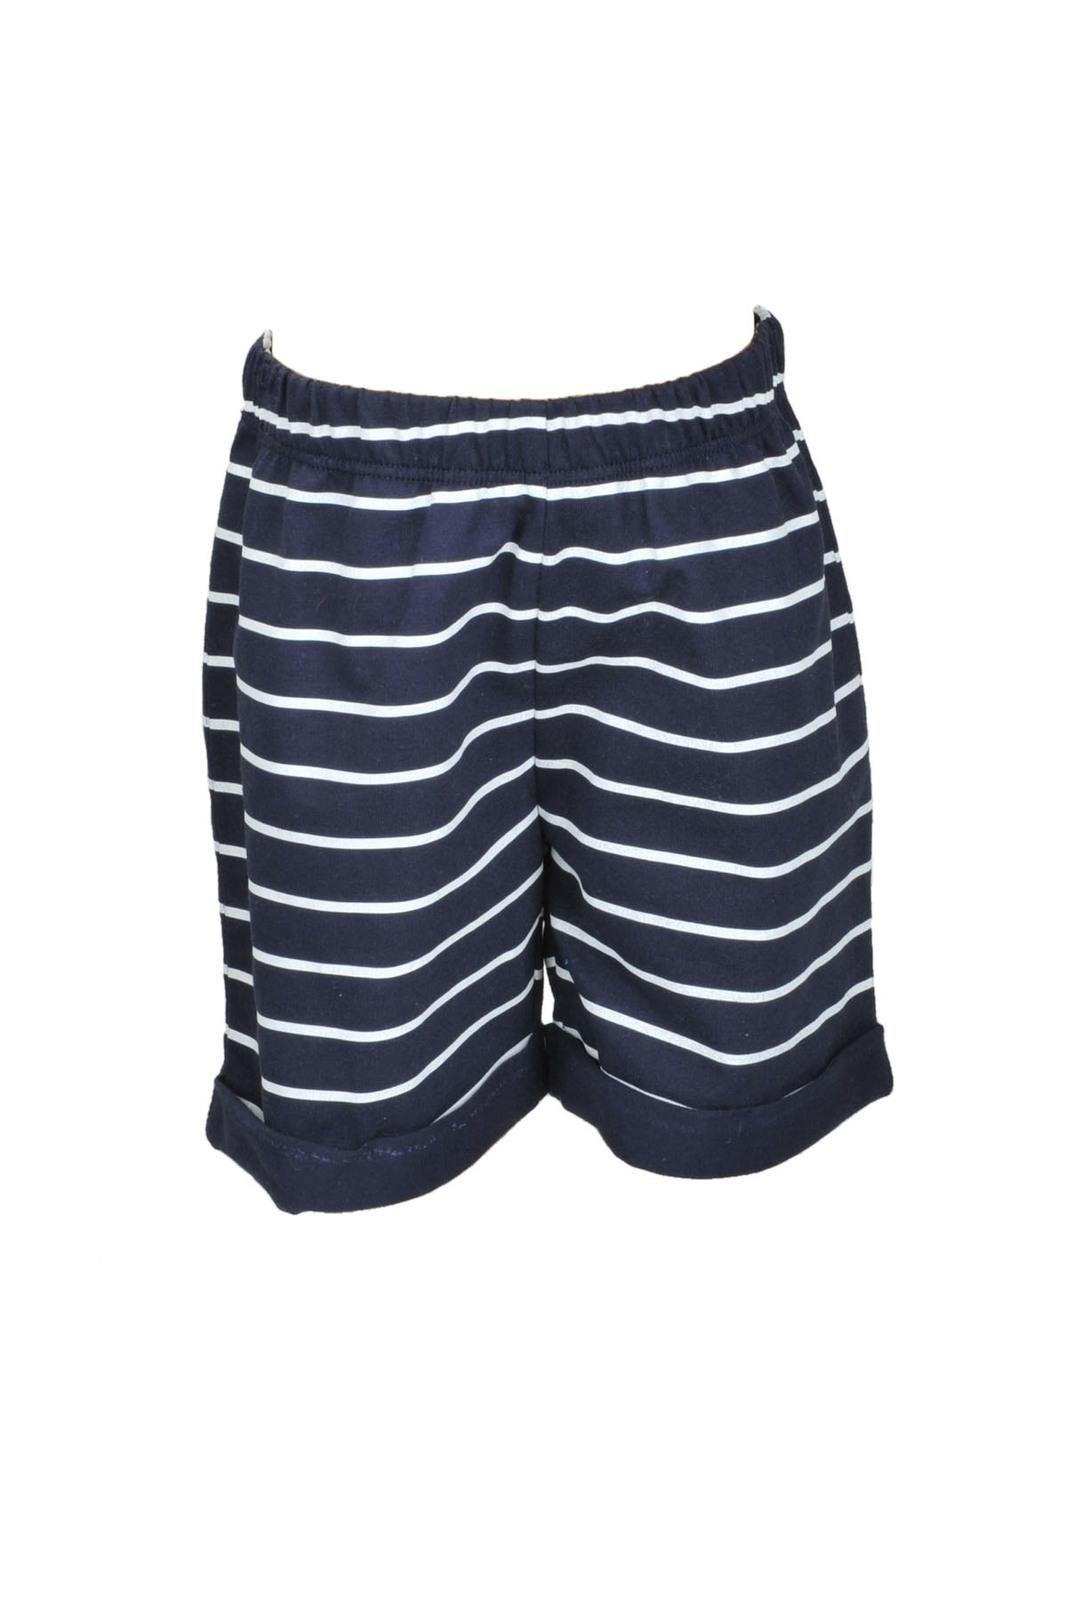 Zeyland: Boys Shorts - Navy Stripe (18-24m -80/92)